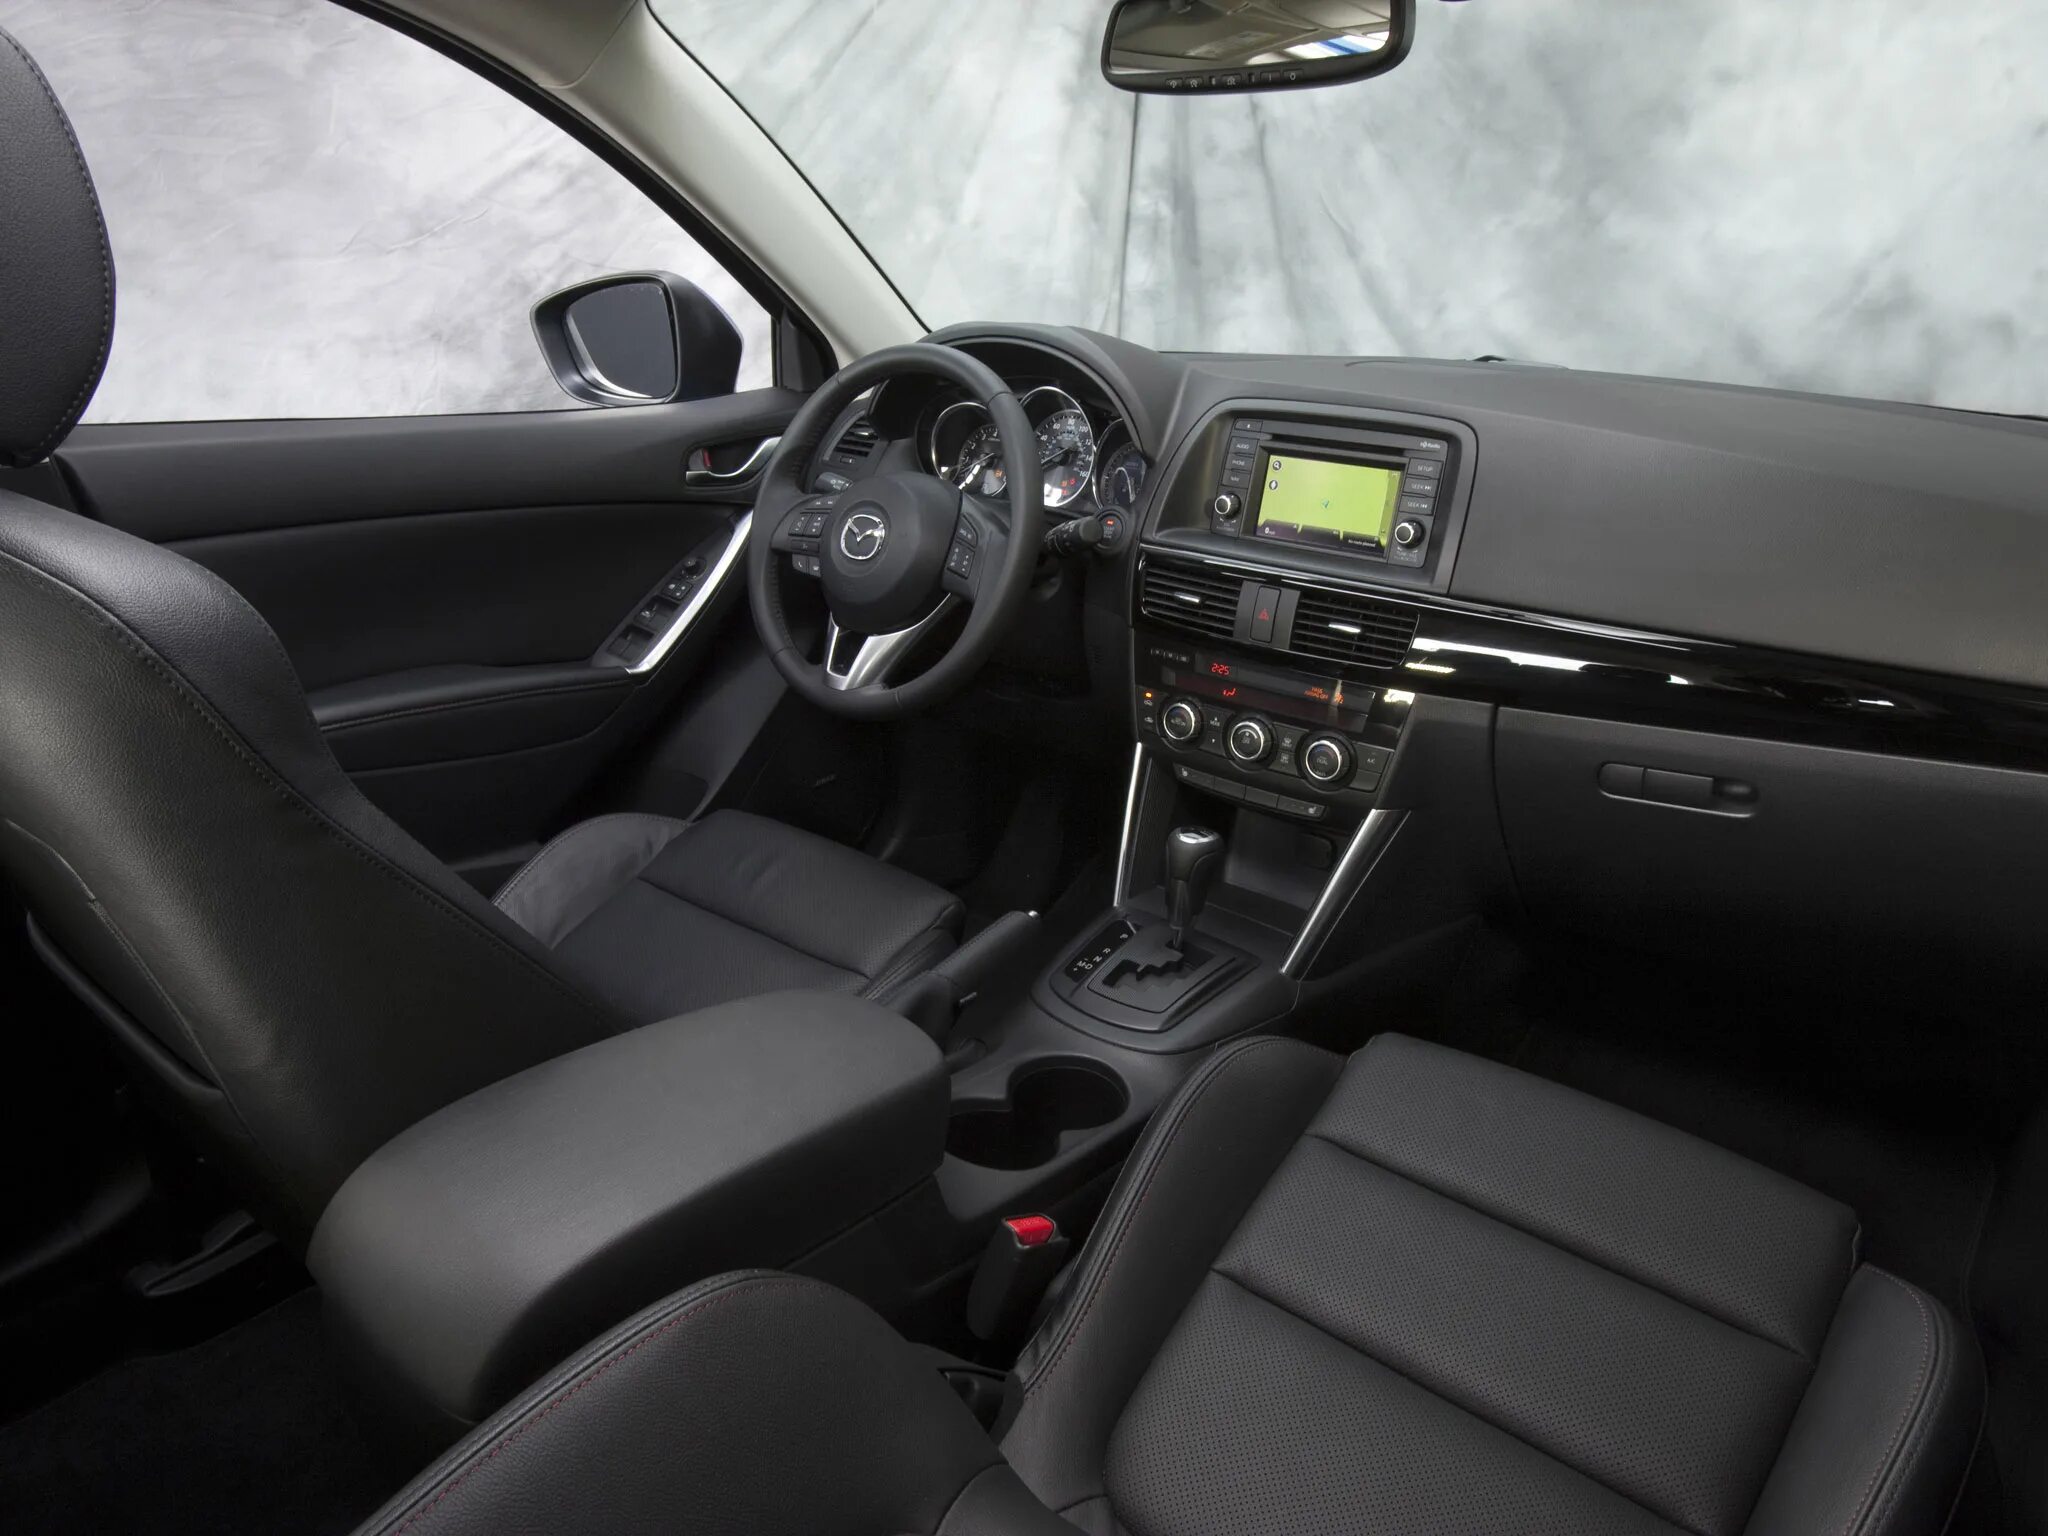 05 2012. Mazda CX-5 2013 салон. Mazda cx5 Interior. Mazda CX 5 2012 салон. CX 5 2012 салон.